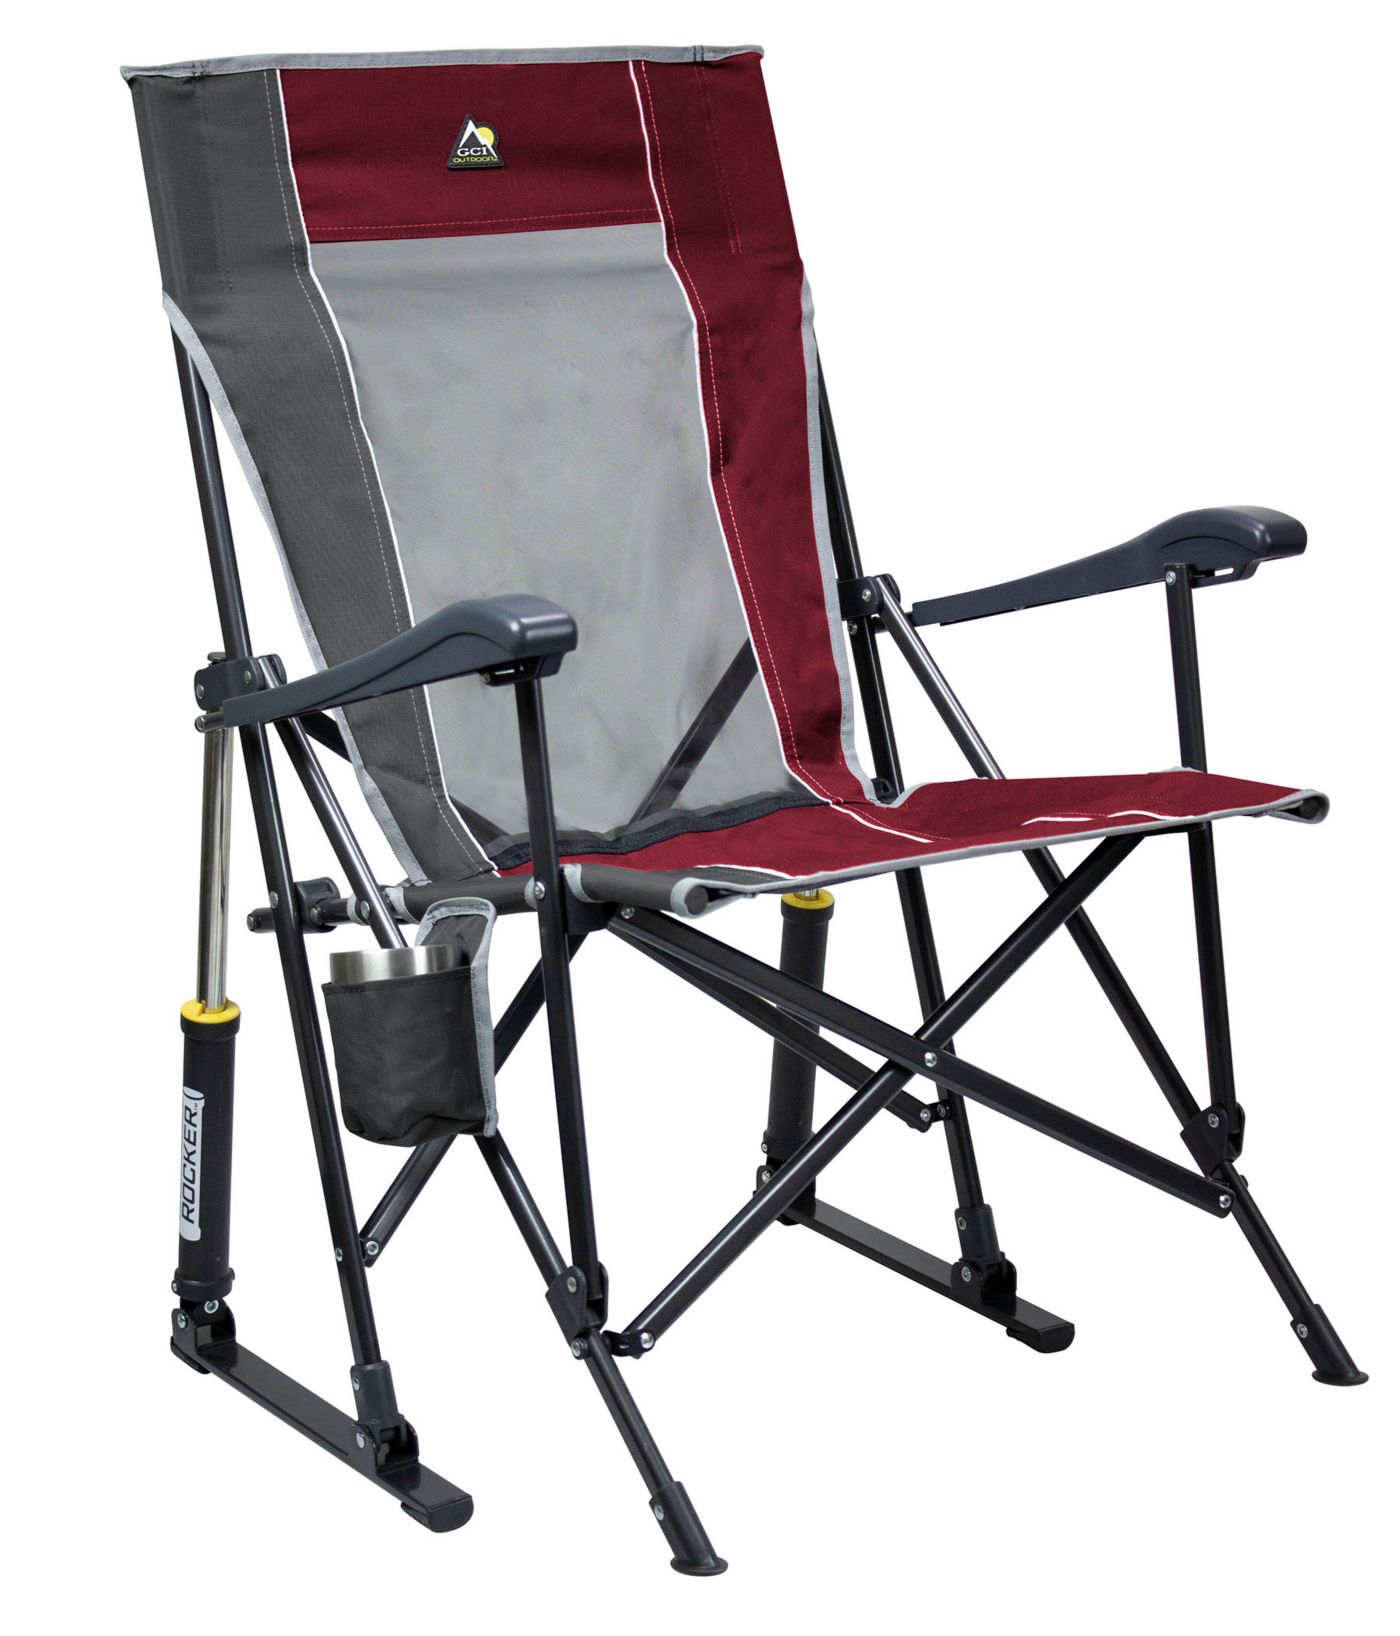 Gci Outdoor Roadtrip Rocker Metal Outdoor Rocking Chair - About Chair